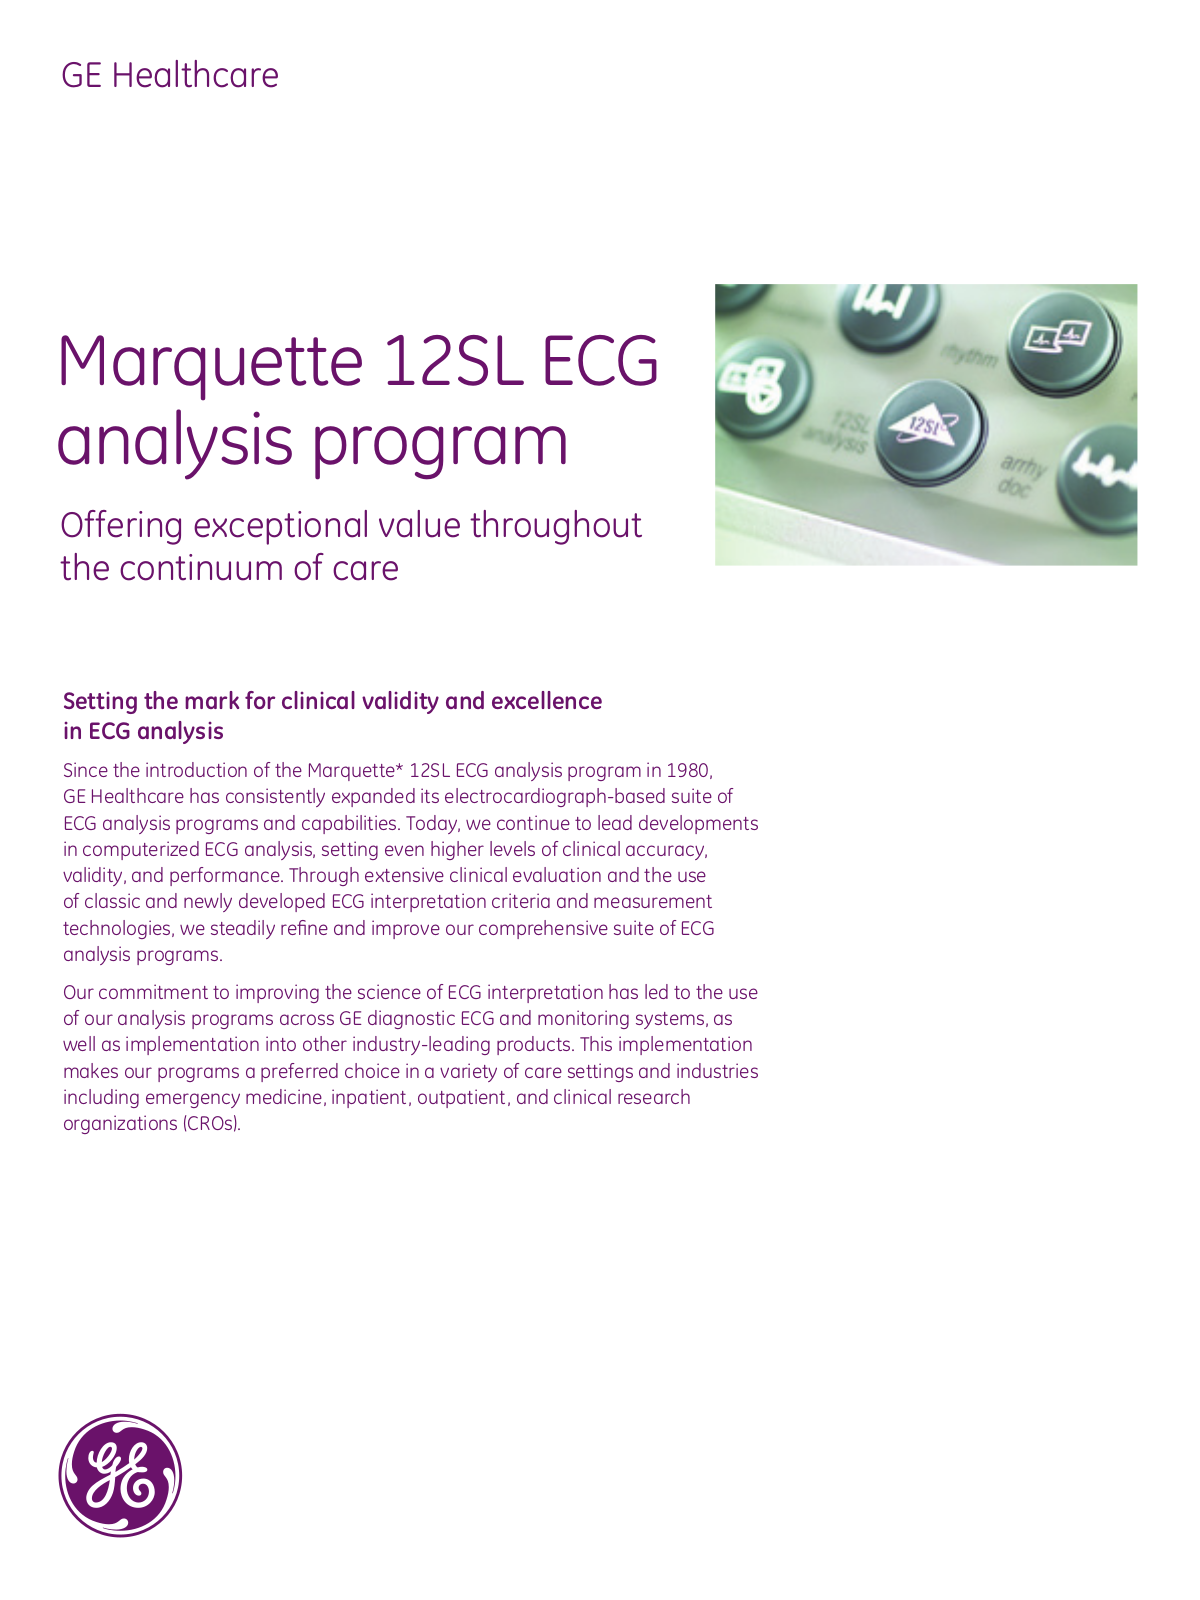 GE Healthcare Marquette 12SL ECG Brochure